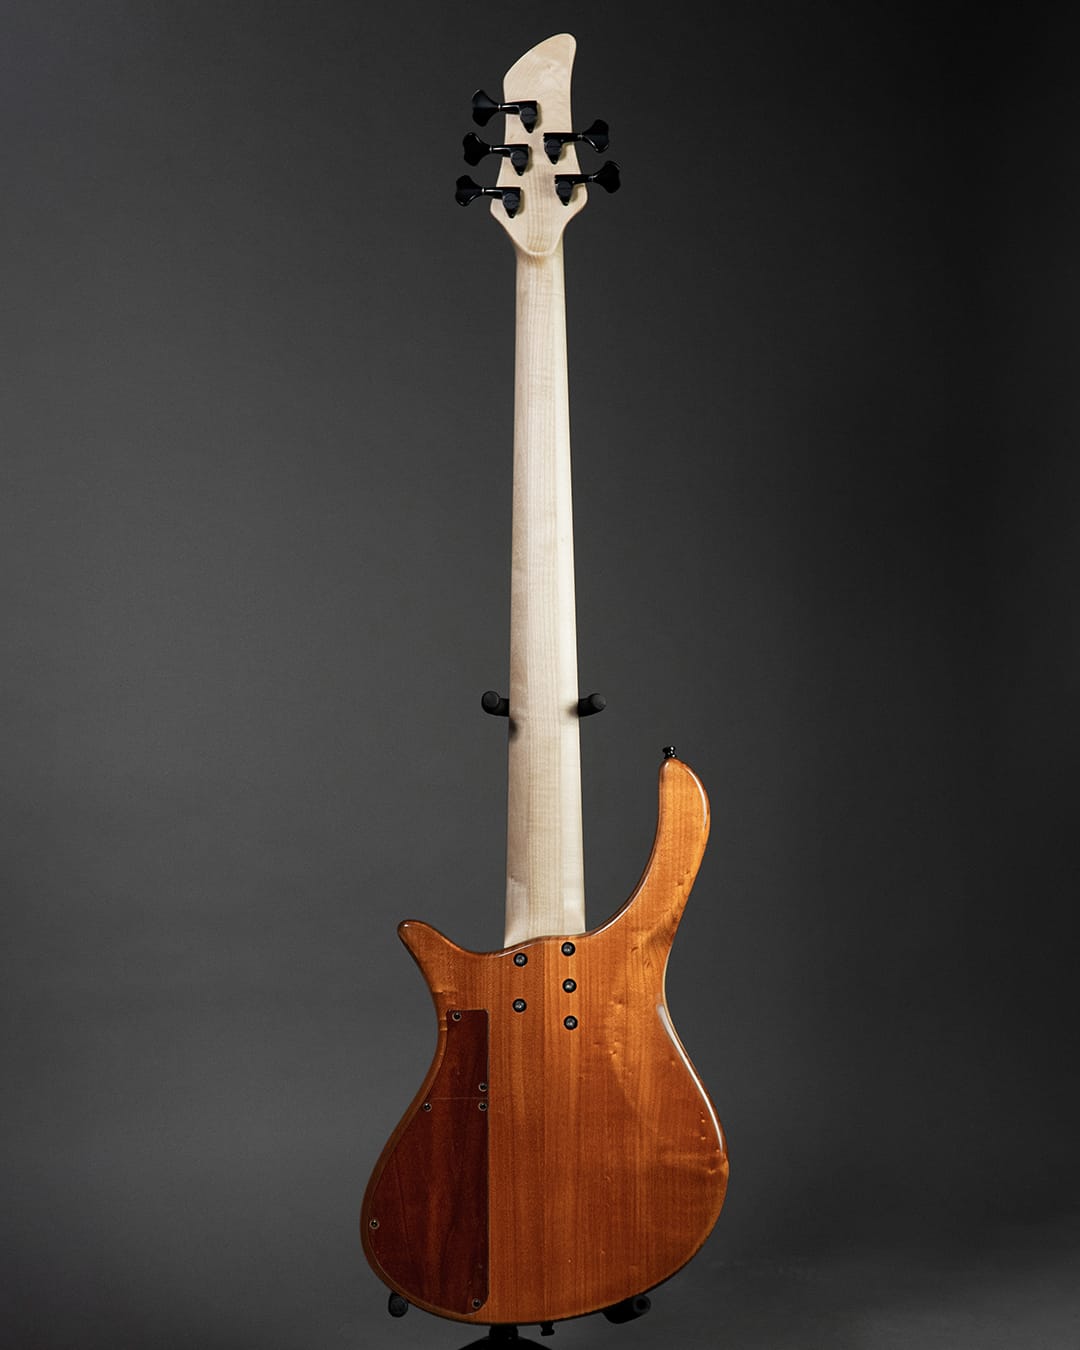 Blasius Berci multi scale custom made bass guitar